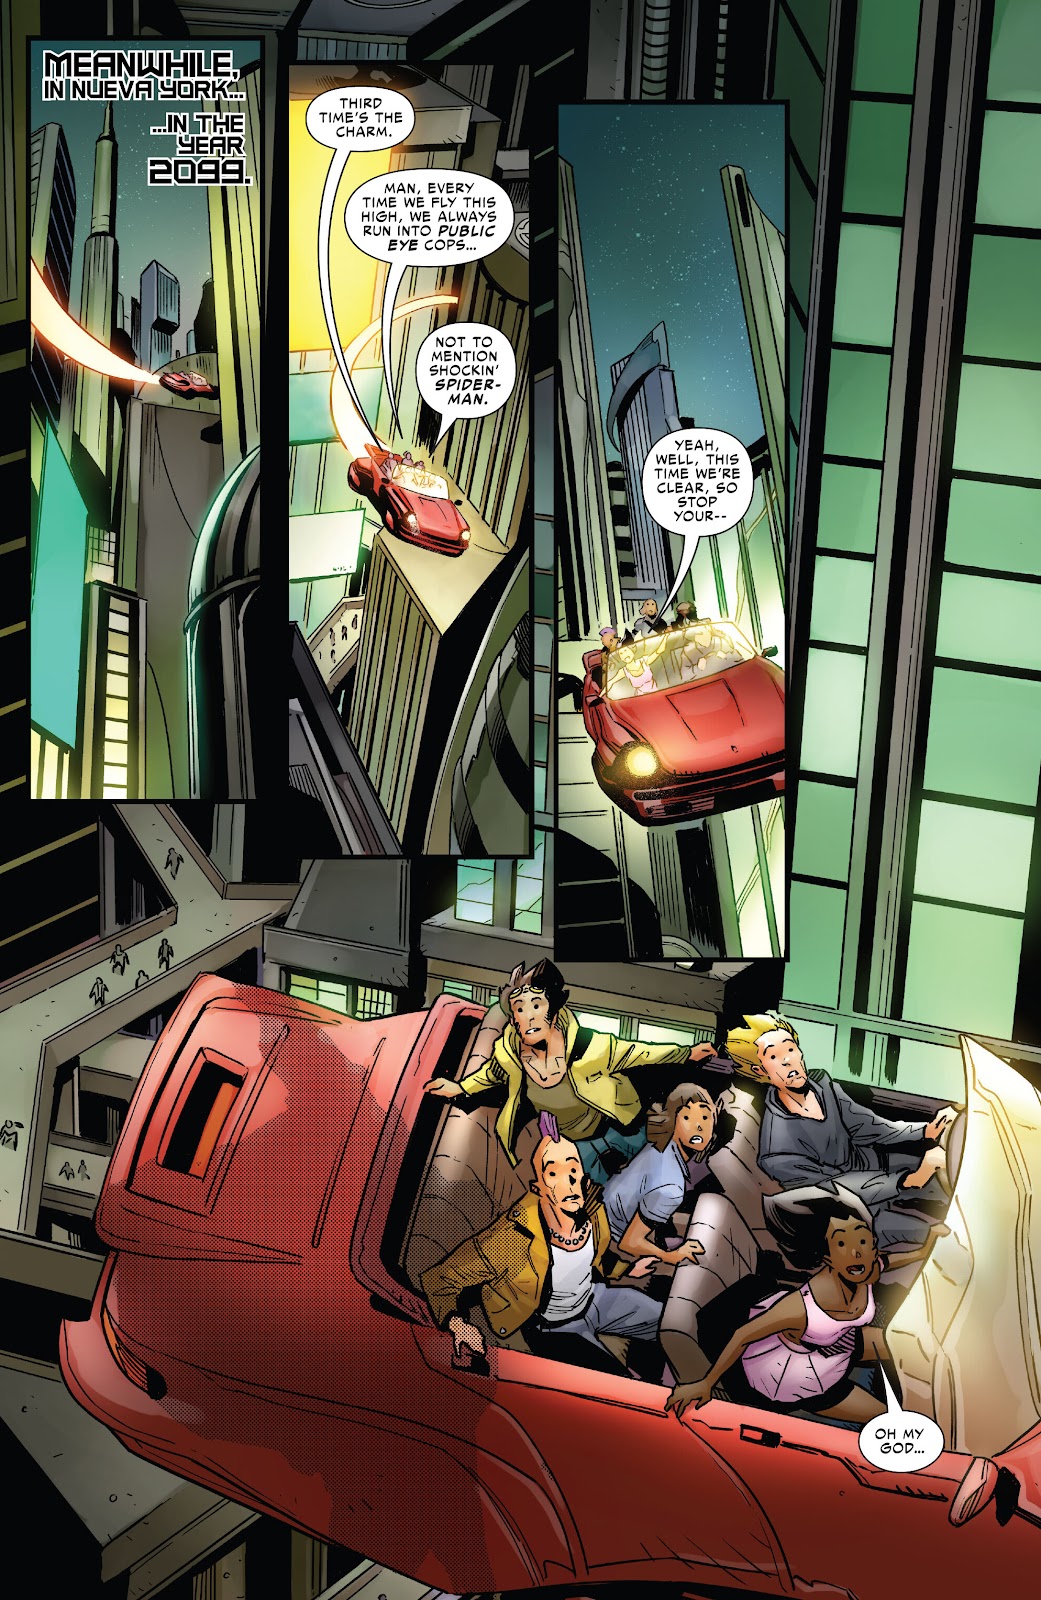 Symbiote Spider-Man 2099 issue 1 - Page 2